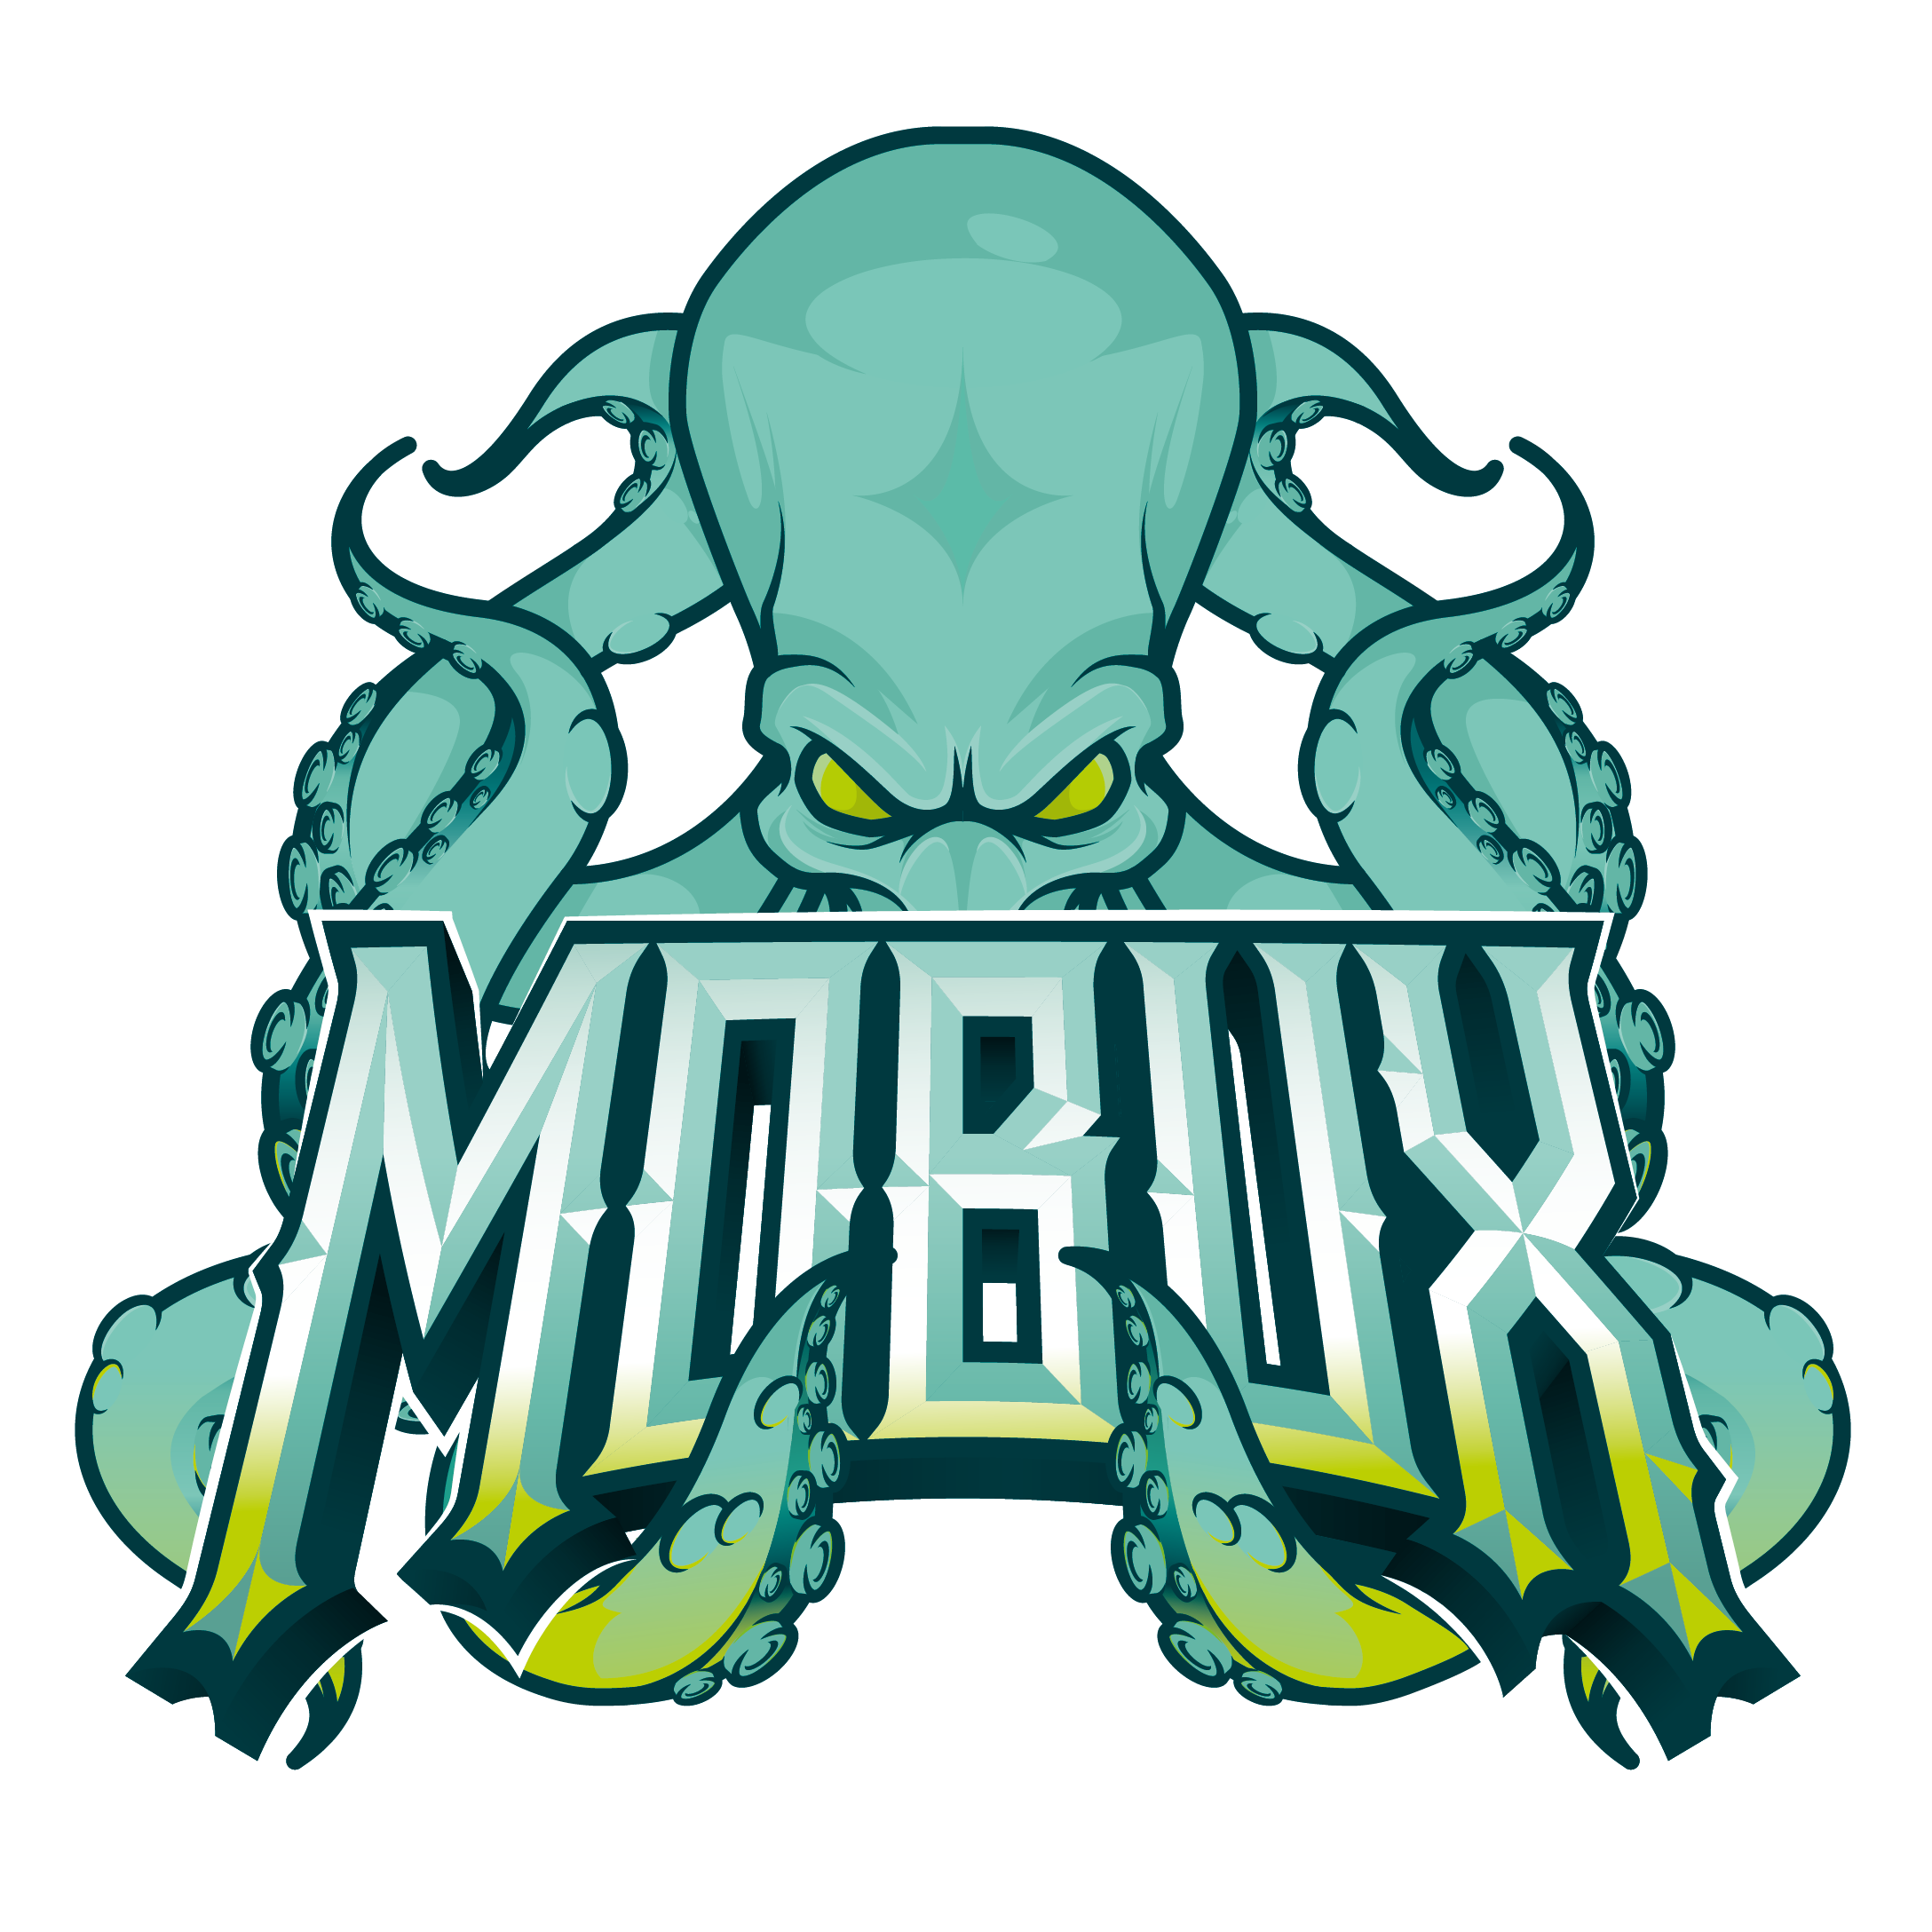 Officiel | Mobux de McMaster